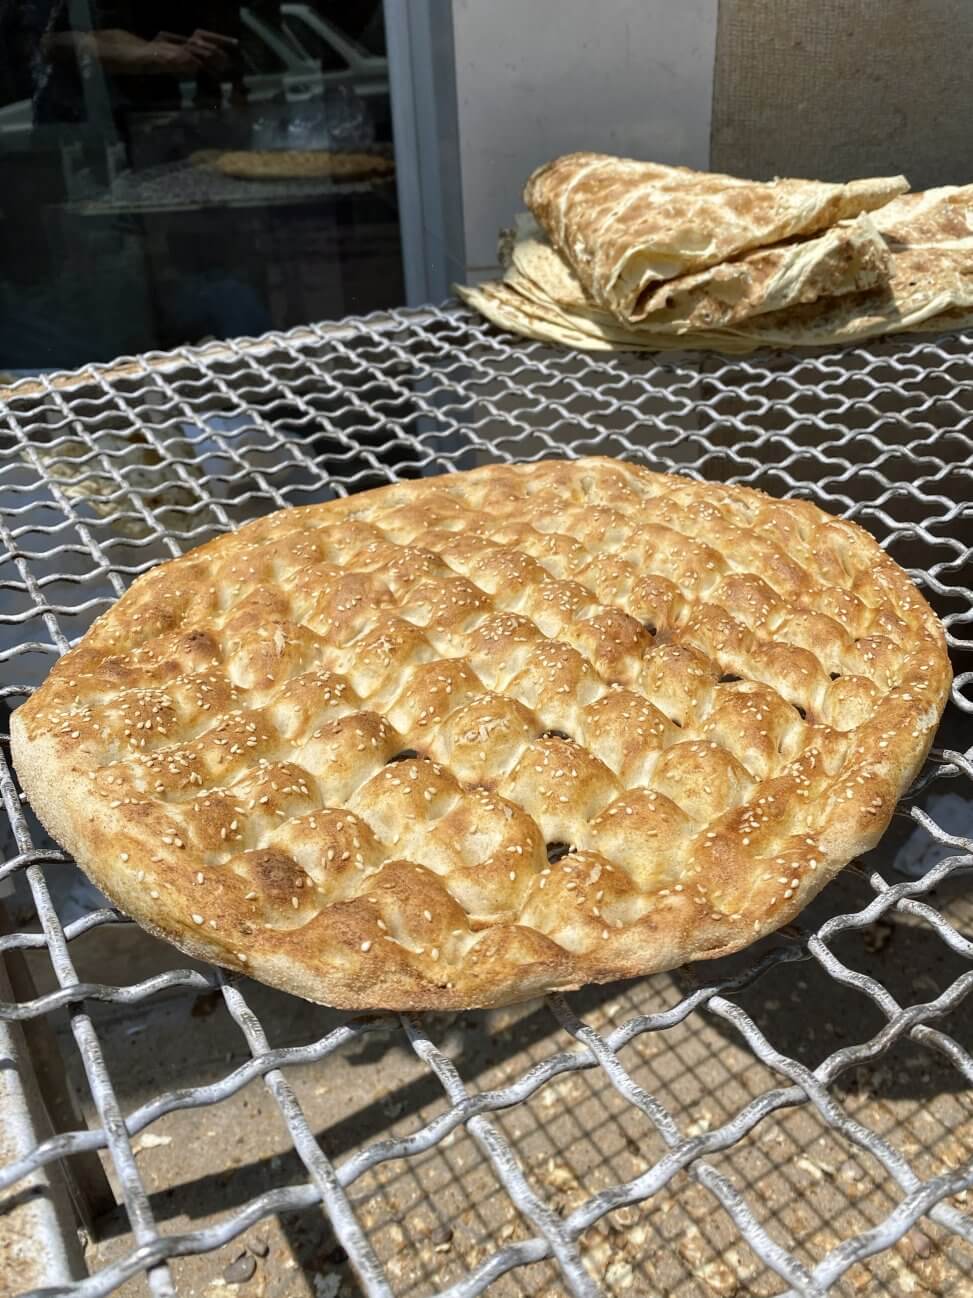 Why is all Iranian bread flat? - ASKANIRANIAN.COM